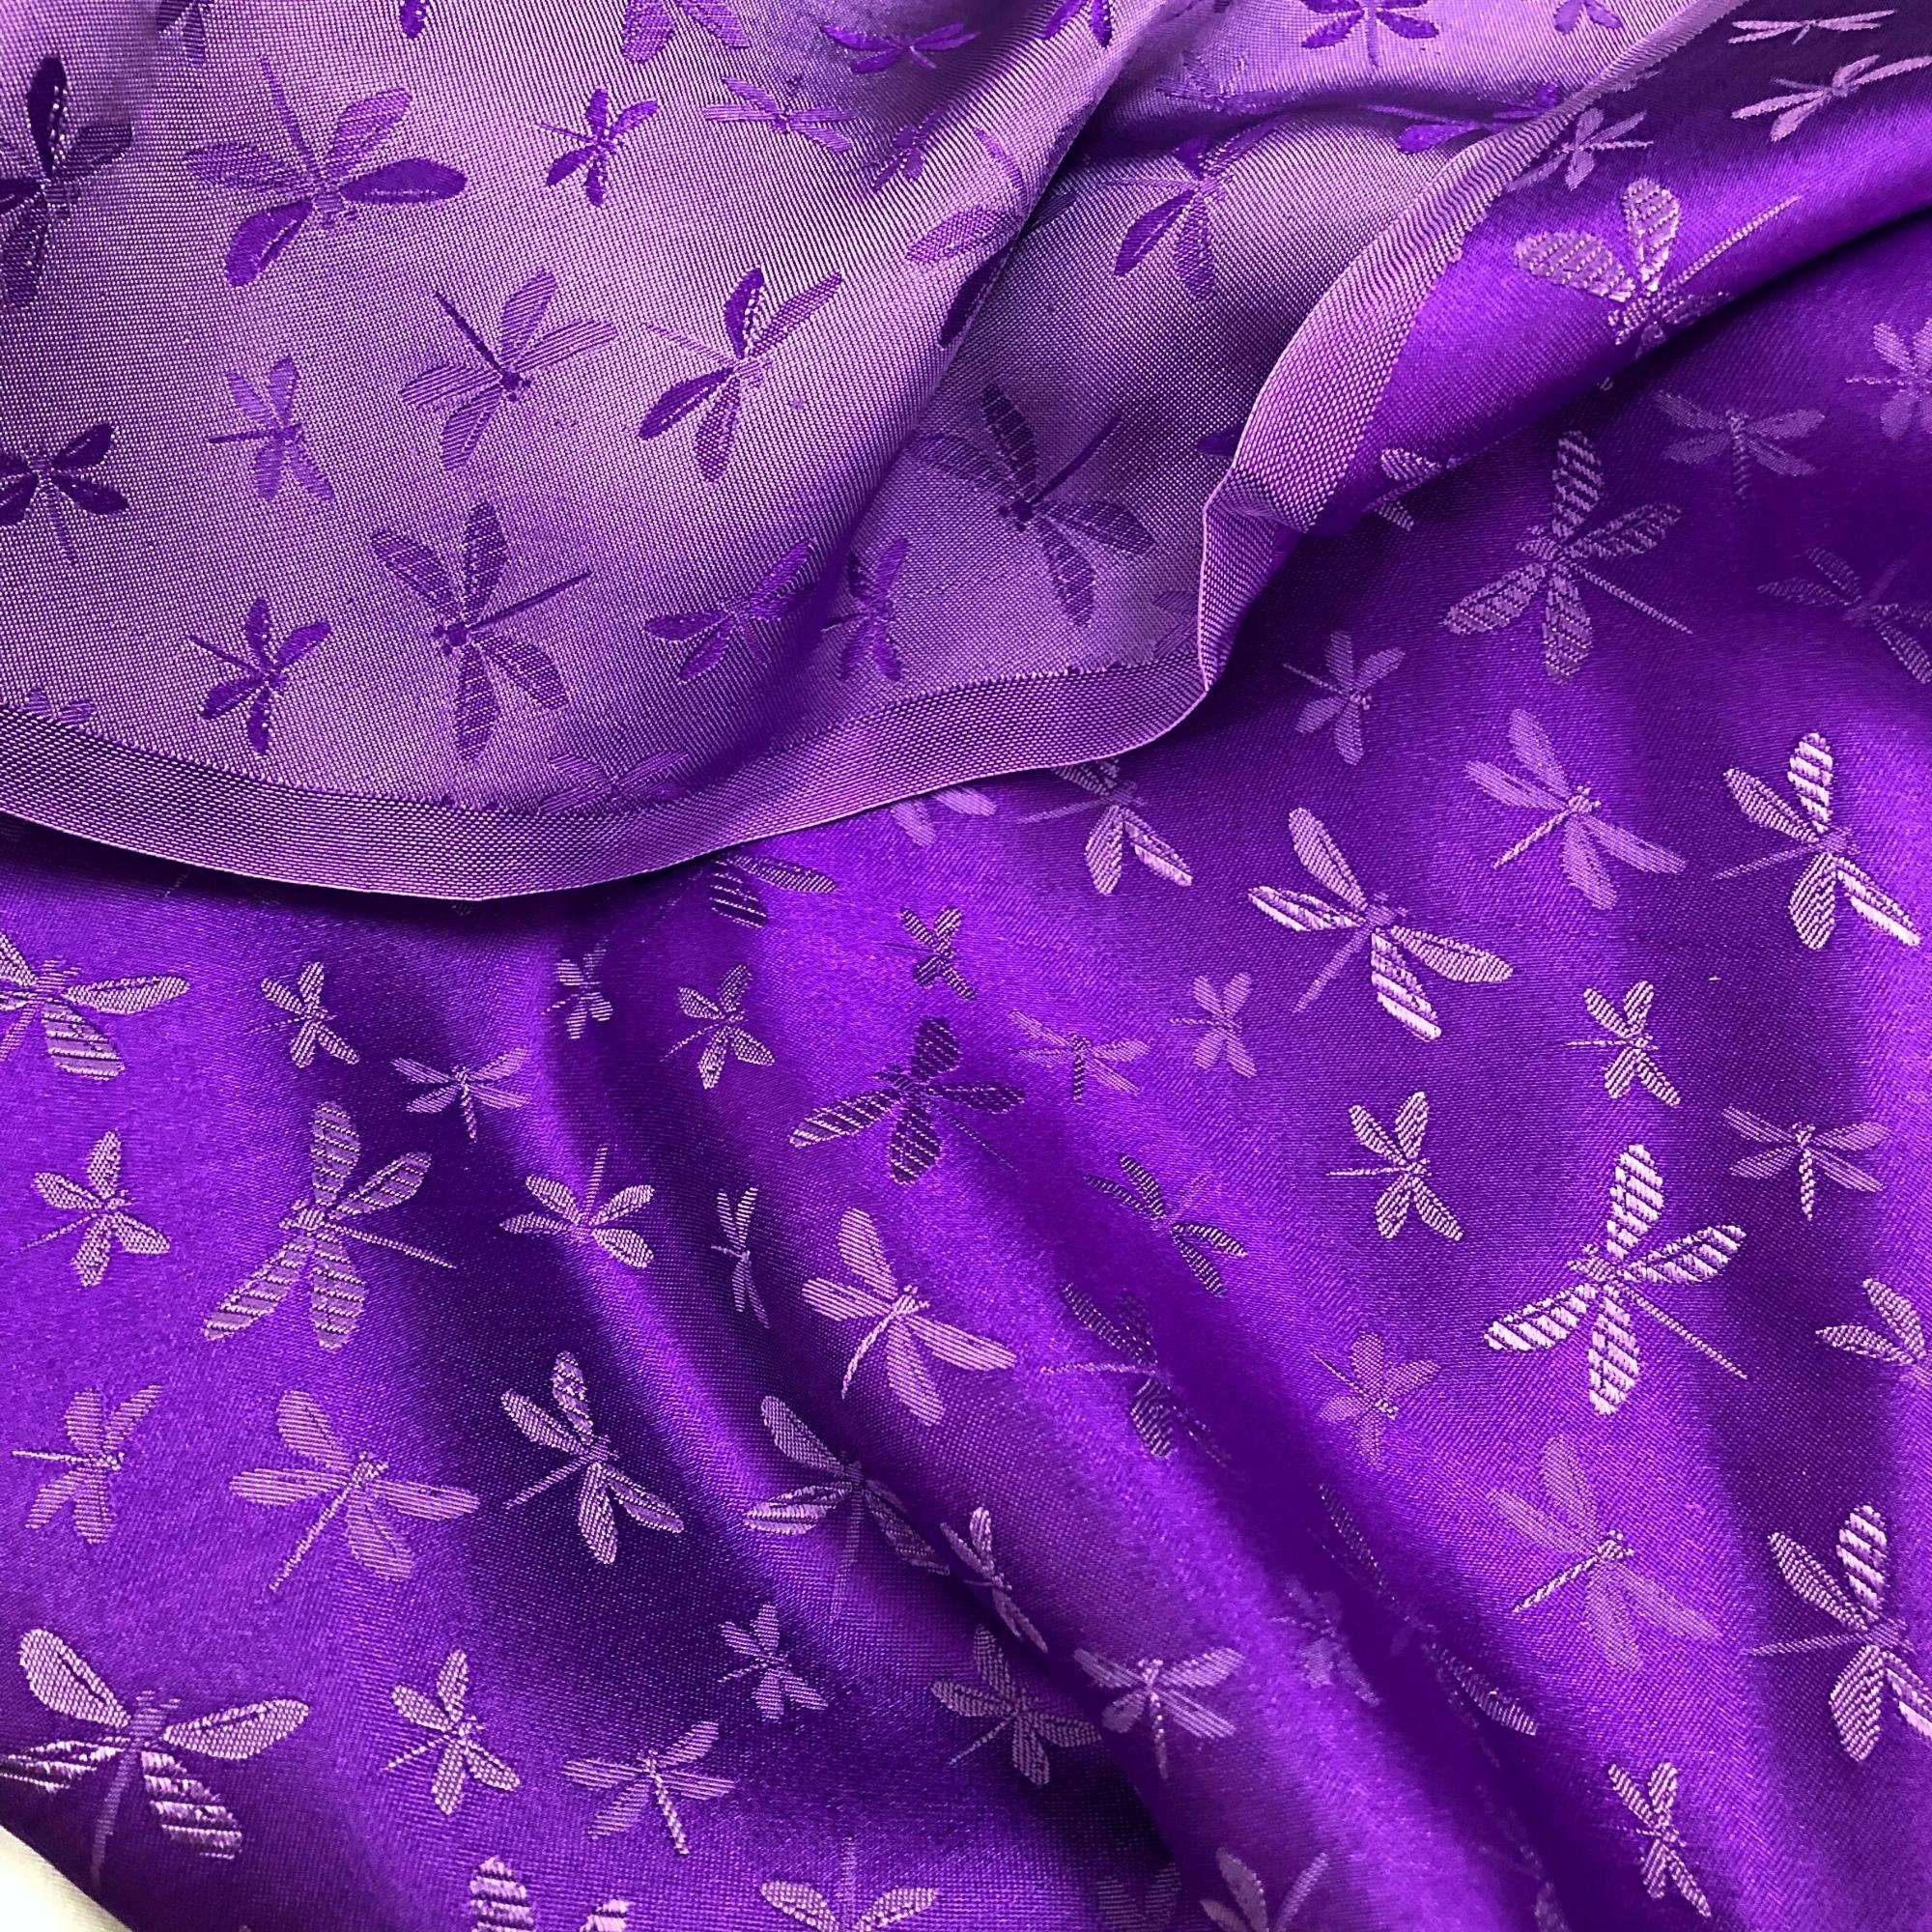 Vải Lụa Tơ Tằm hoa văn chuồn chuồn màu tím may áo dài, mềm#mượt#mịn, dệt thủ công, khổ vải 90cm